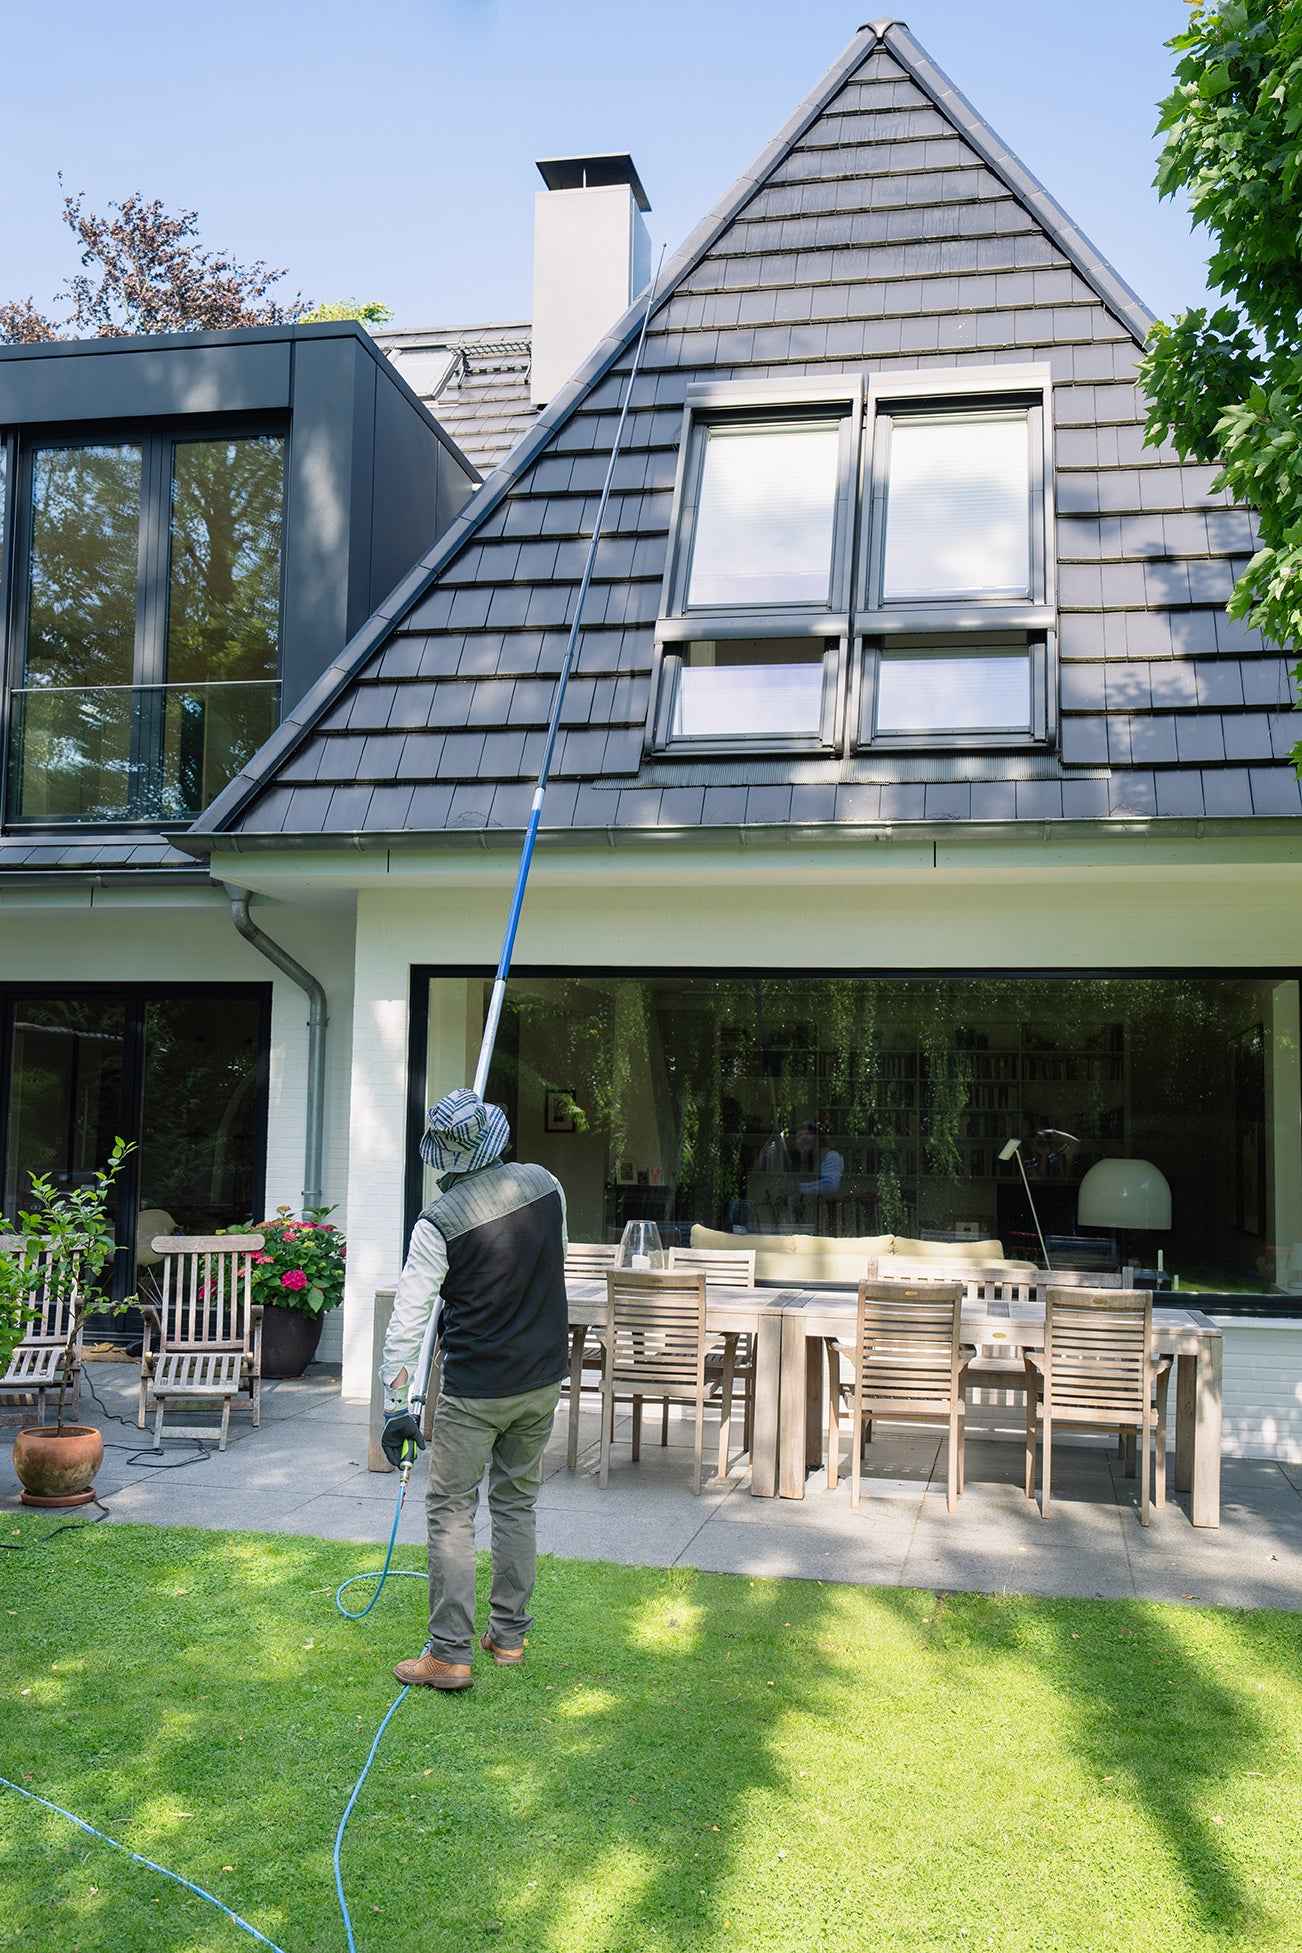 Khawi Teleskoplanze im Einsatz an Hausdach - Dach & Fassade reinigen